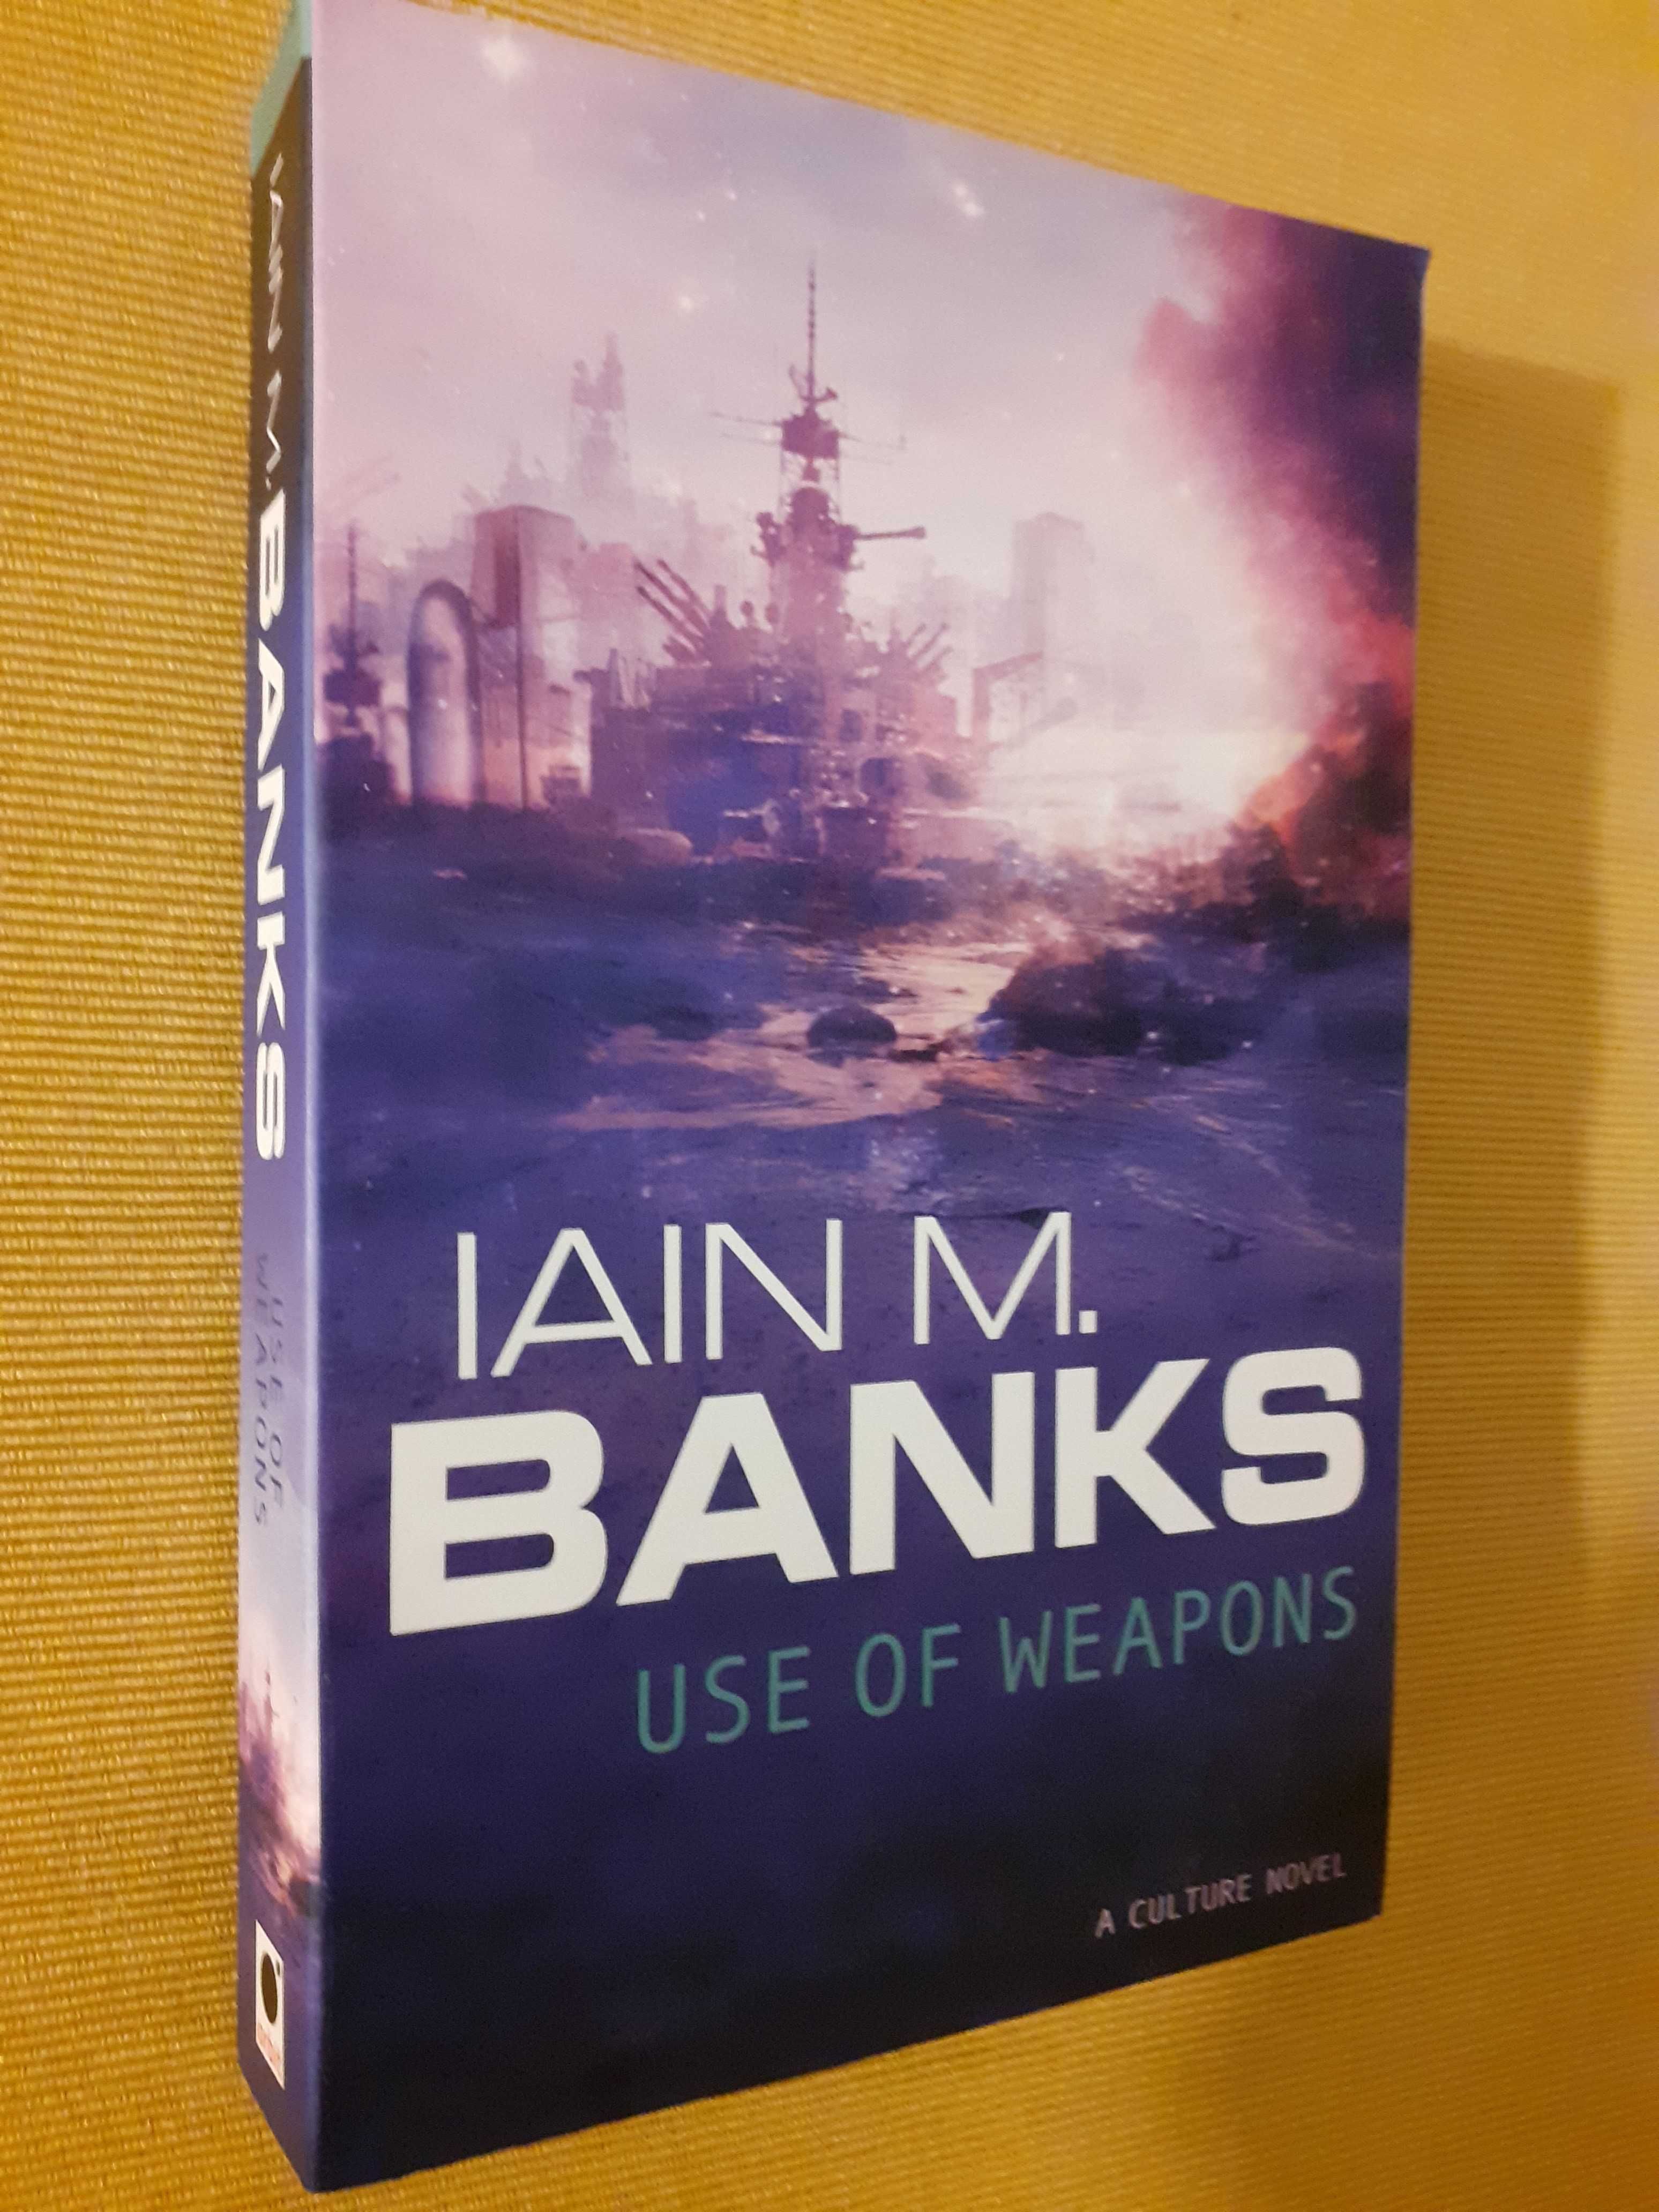 3 carti din seria science-fiction Cultura/Culture de Iain M. Banks